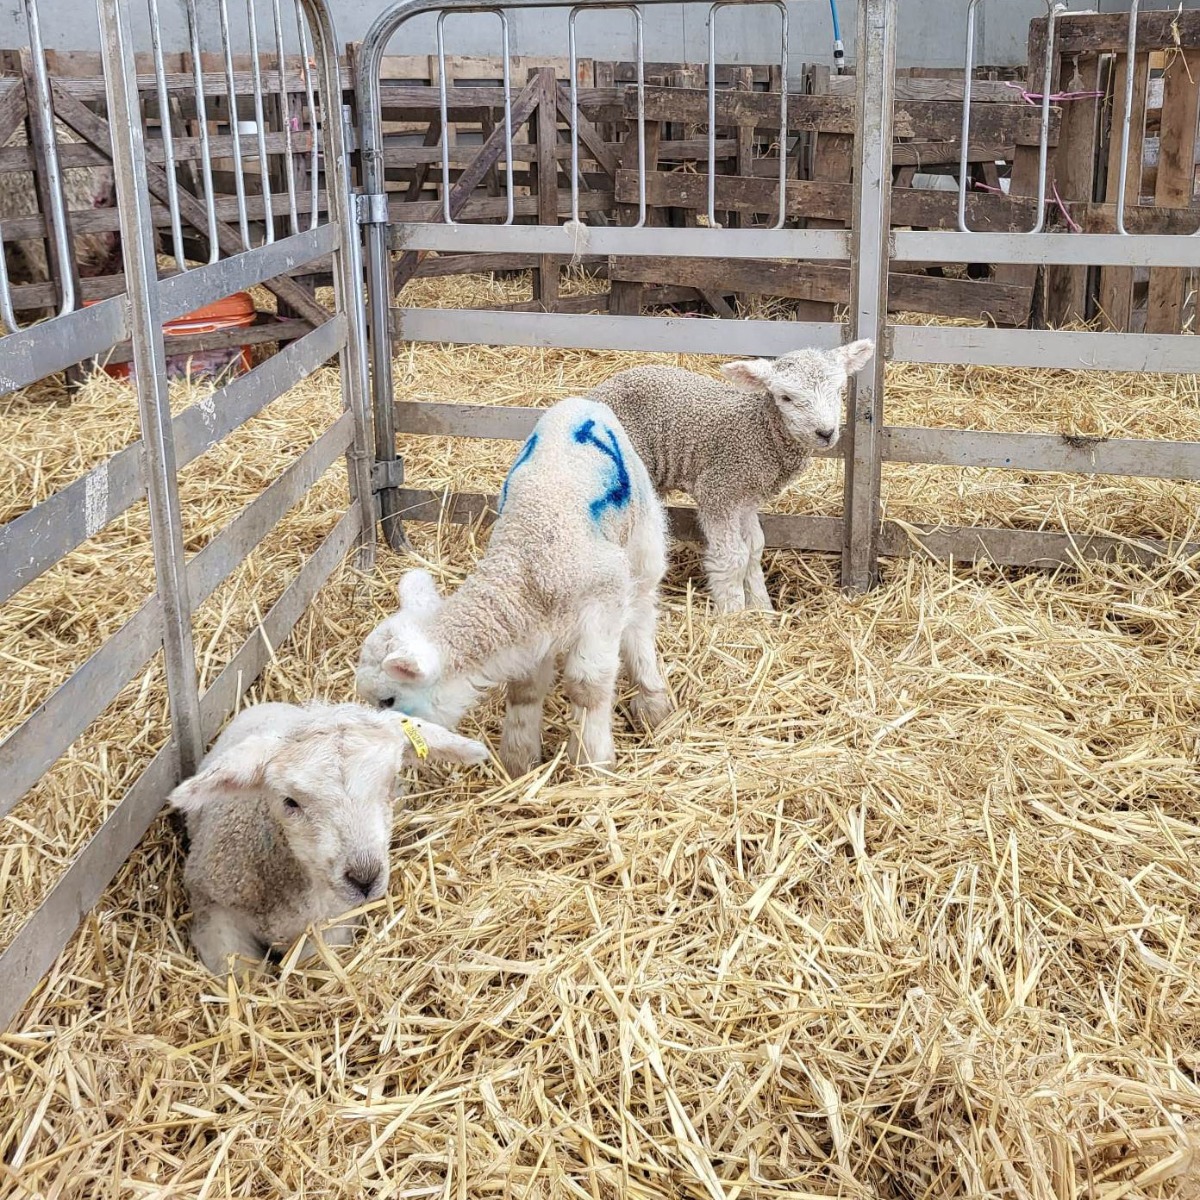 Three lambs in pen